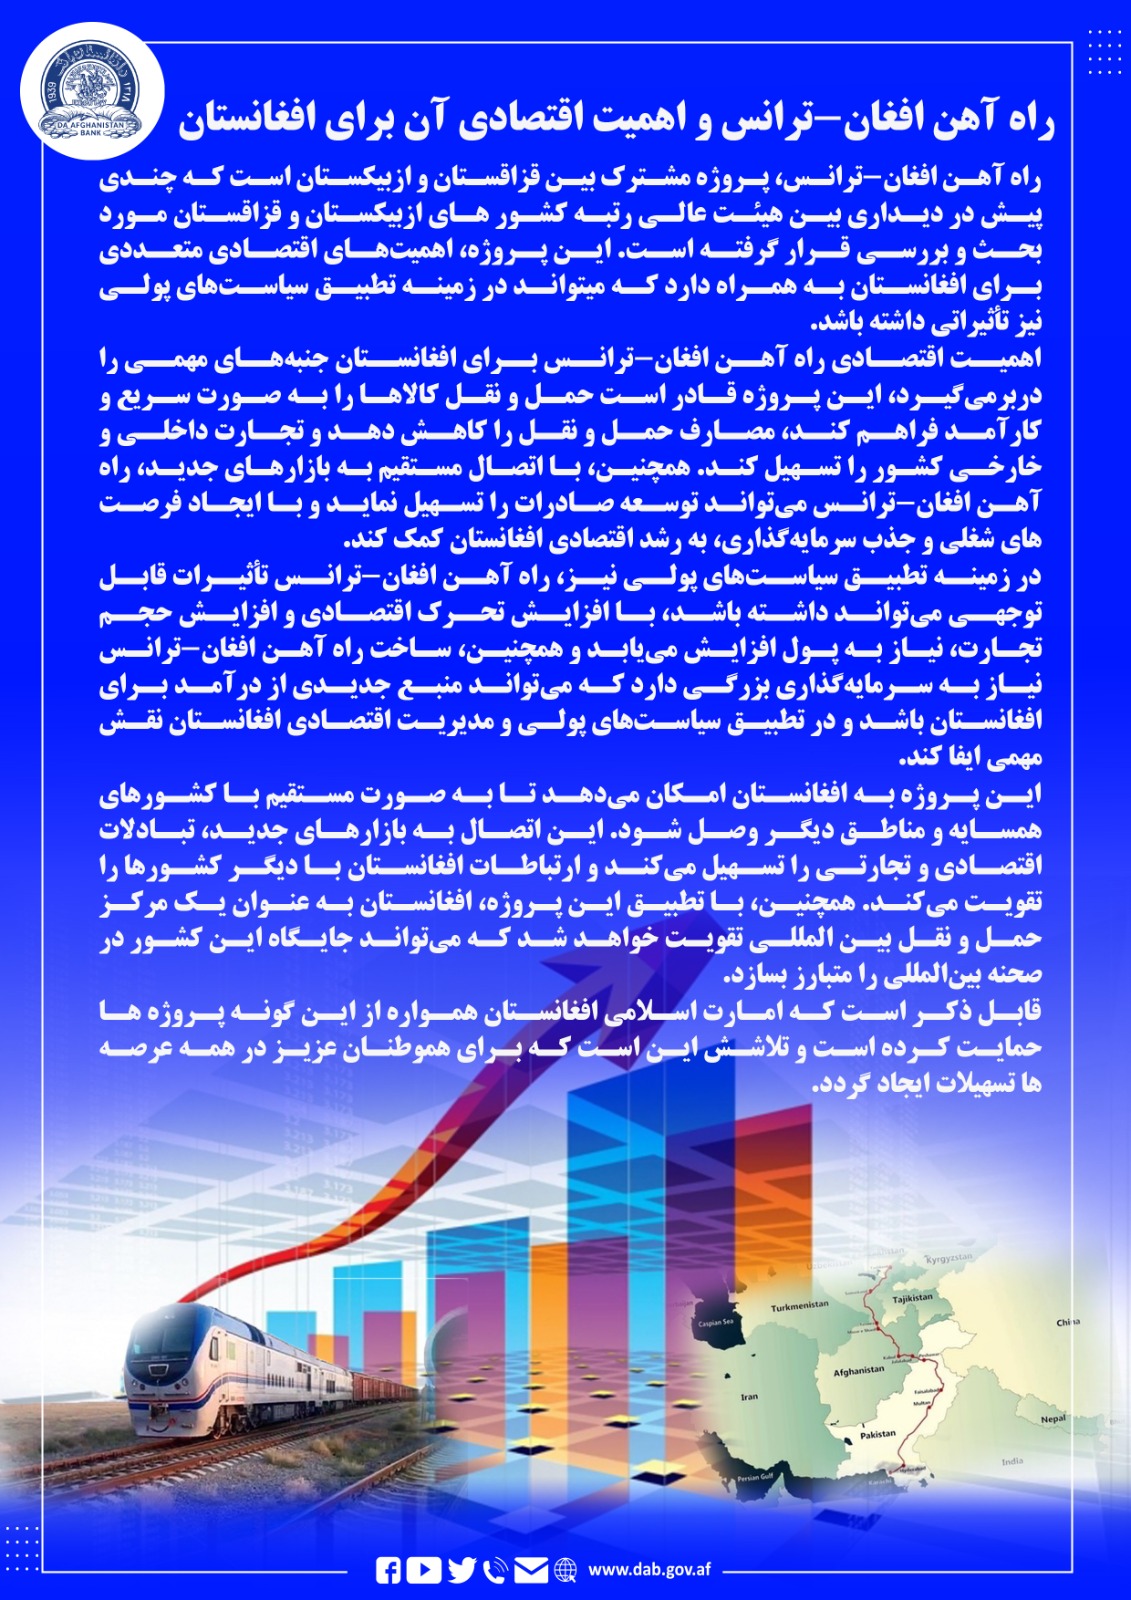 راه آهن افغان - ترانس و اهمیت اقتصادی آن برای افغانستان